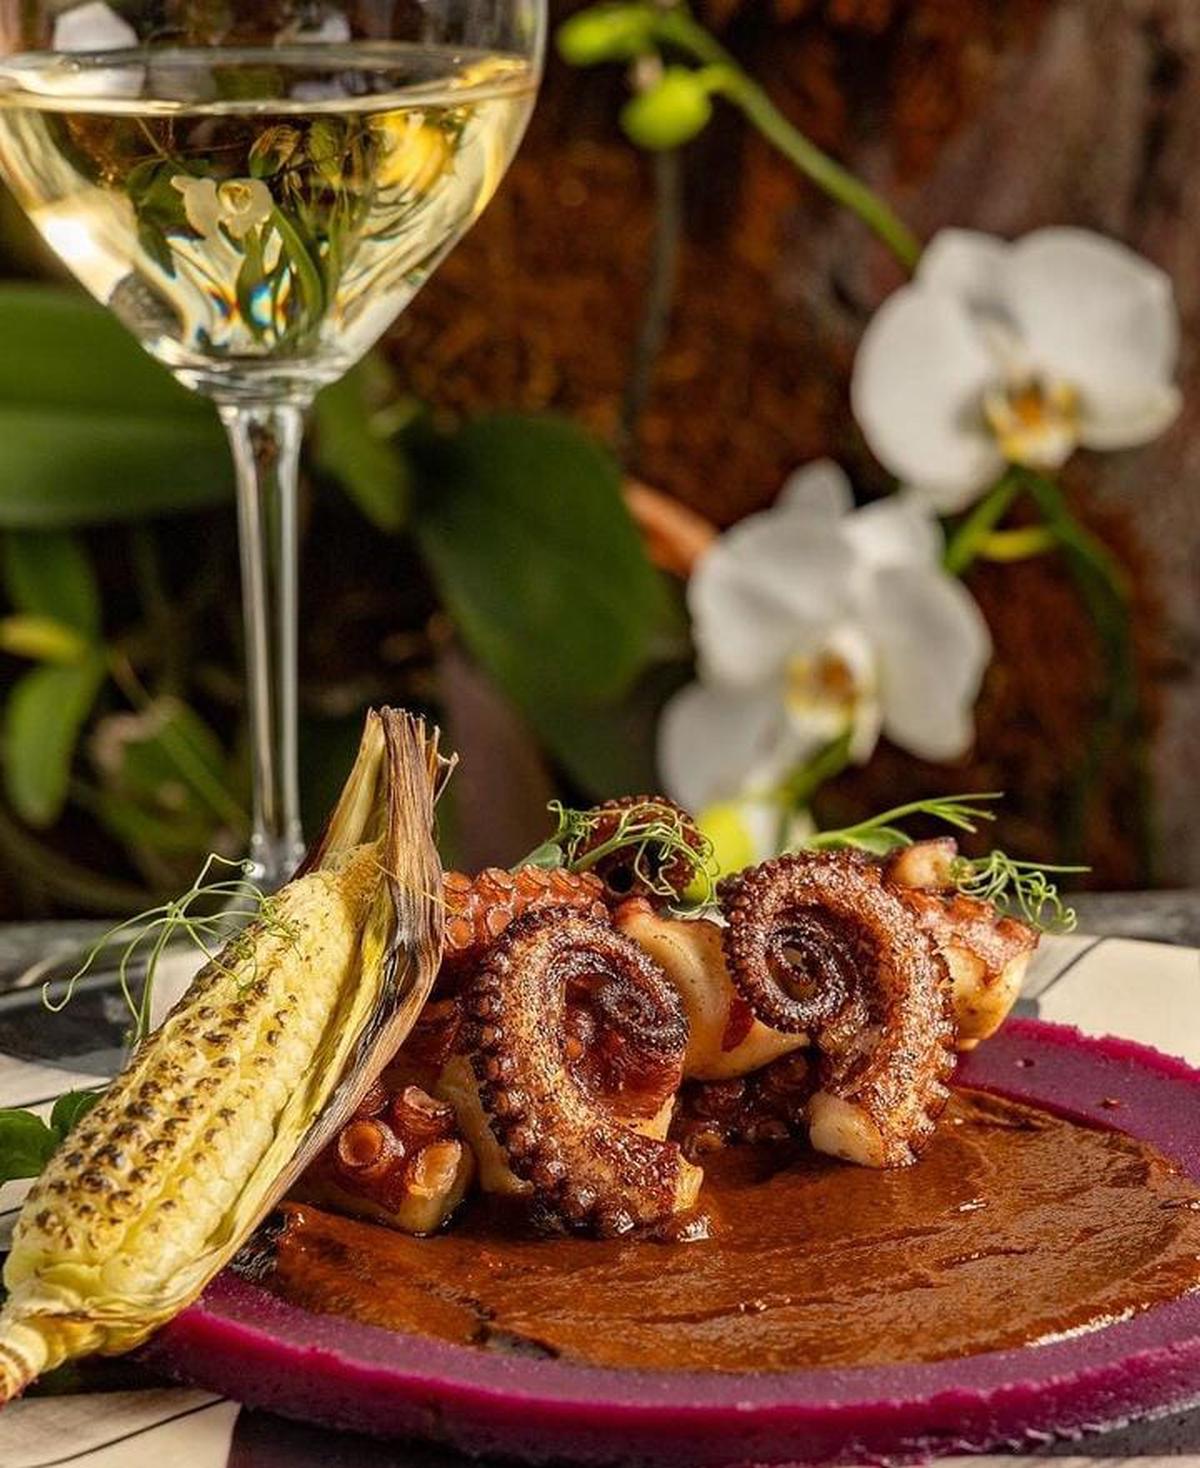 Comida en Bruna restaurante | Comida mexicana reinterpretada por un chef (bruna_mx/Instagram).